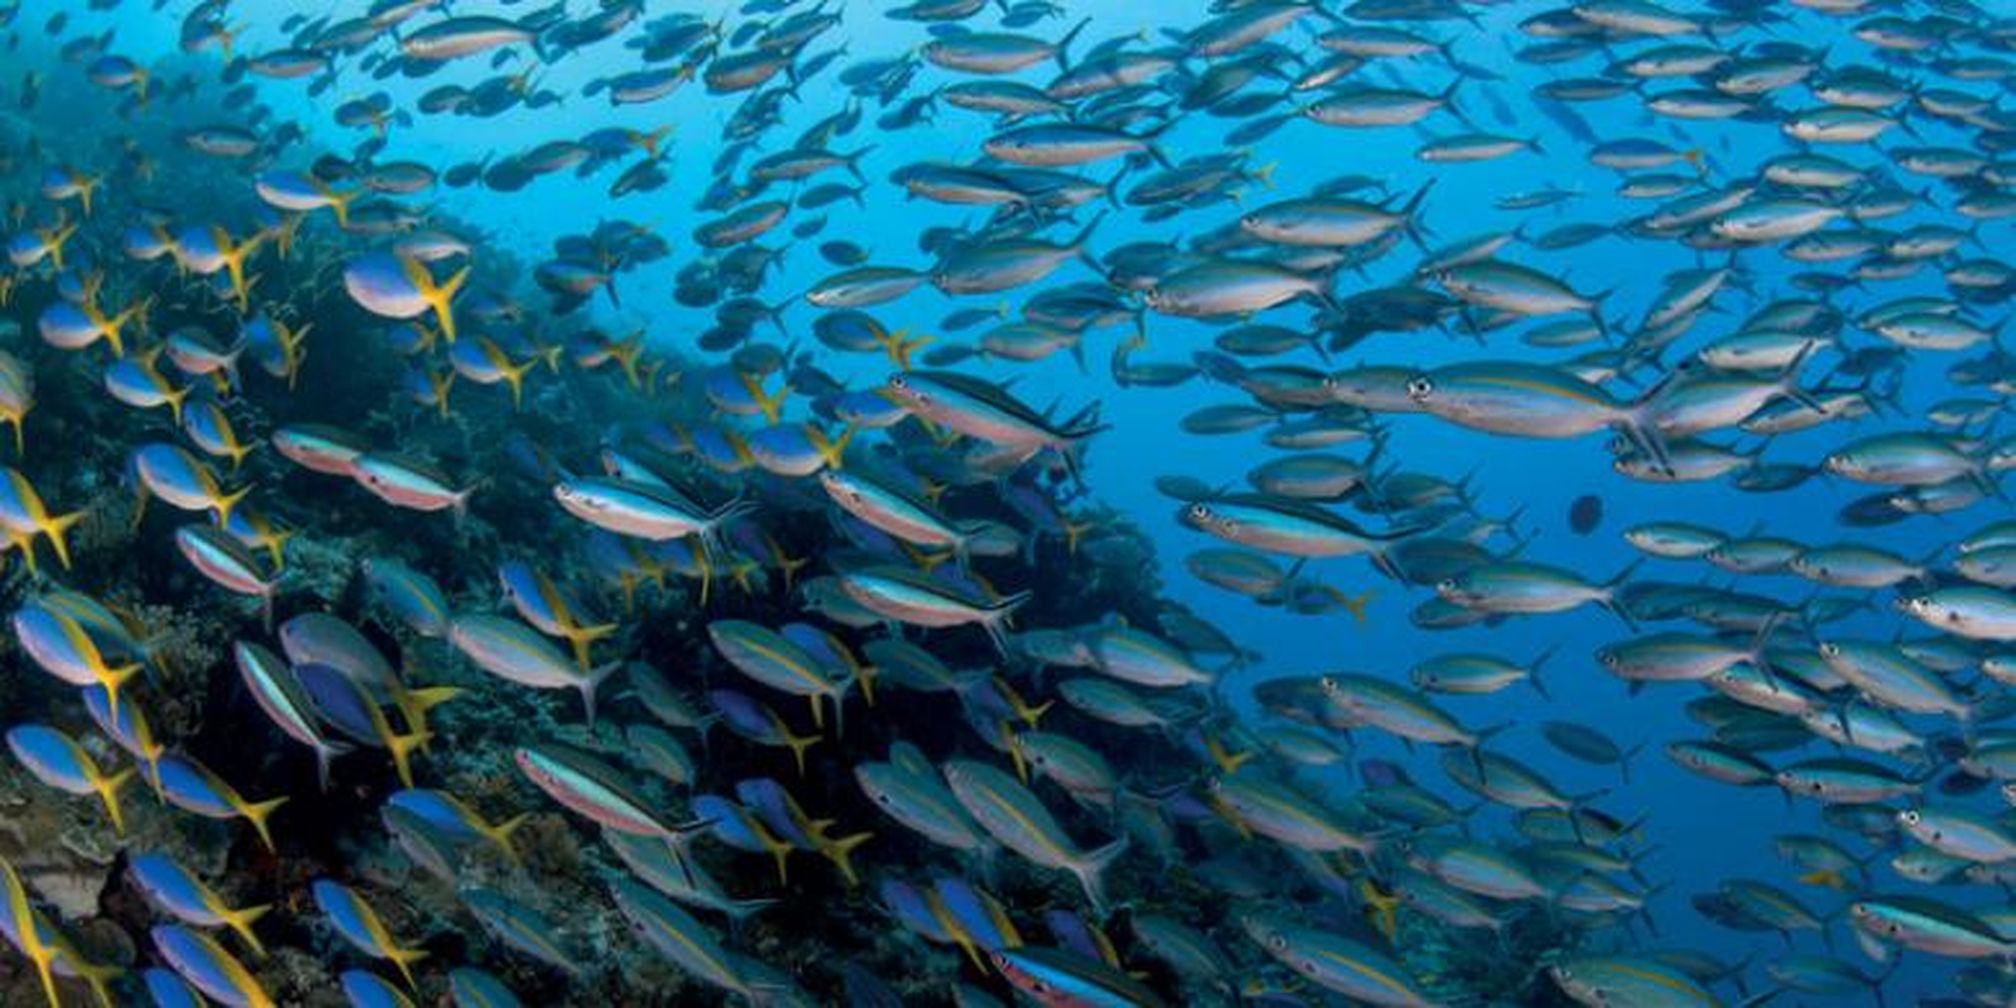 Download 61 Koleksi Gambar Pemandangan Ikan Bawah Laut Hd Gratis